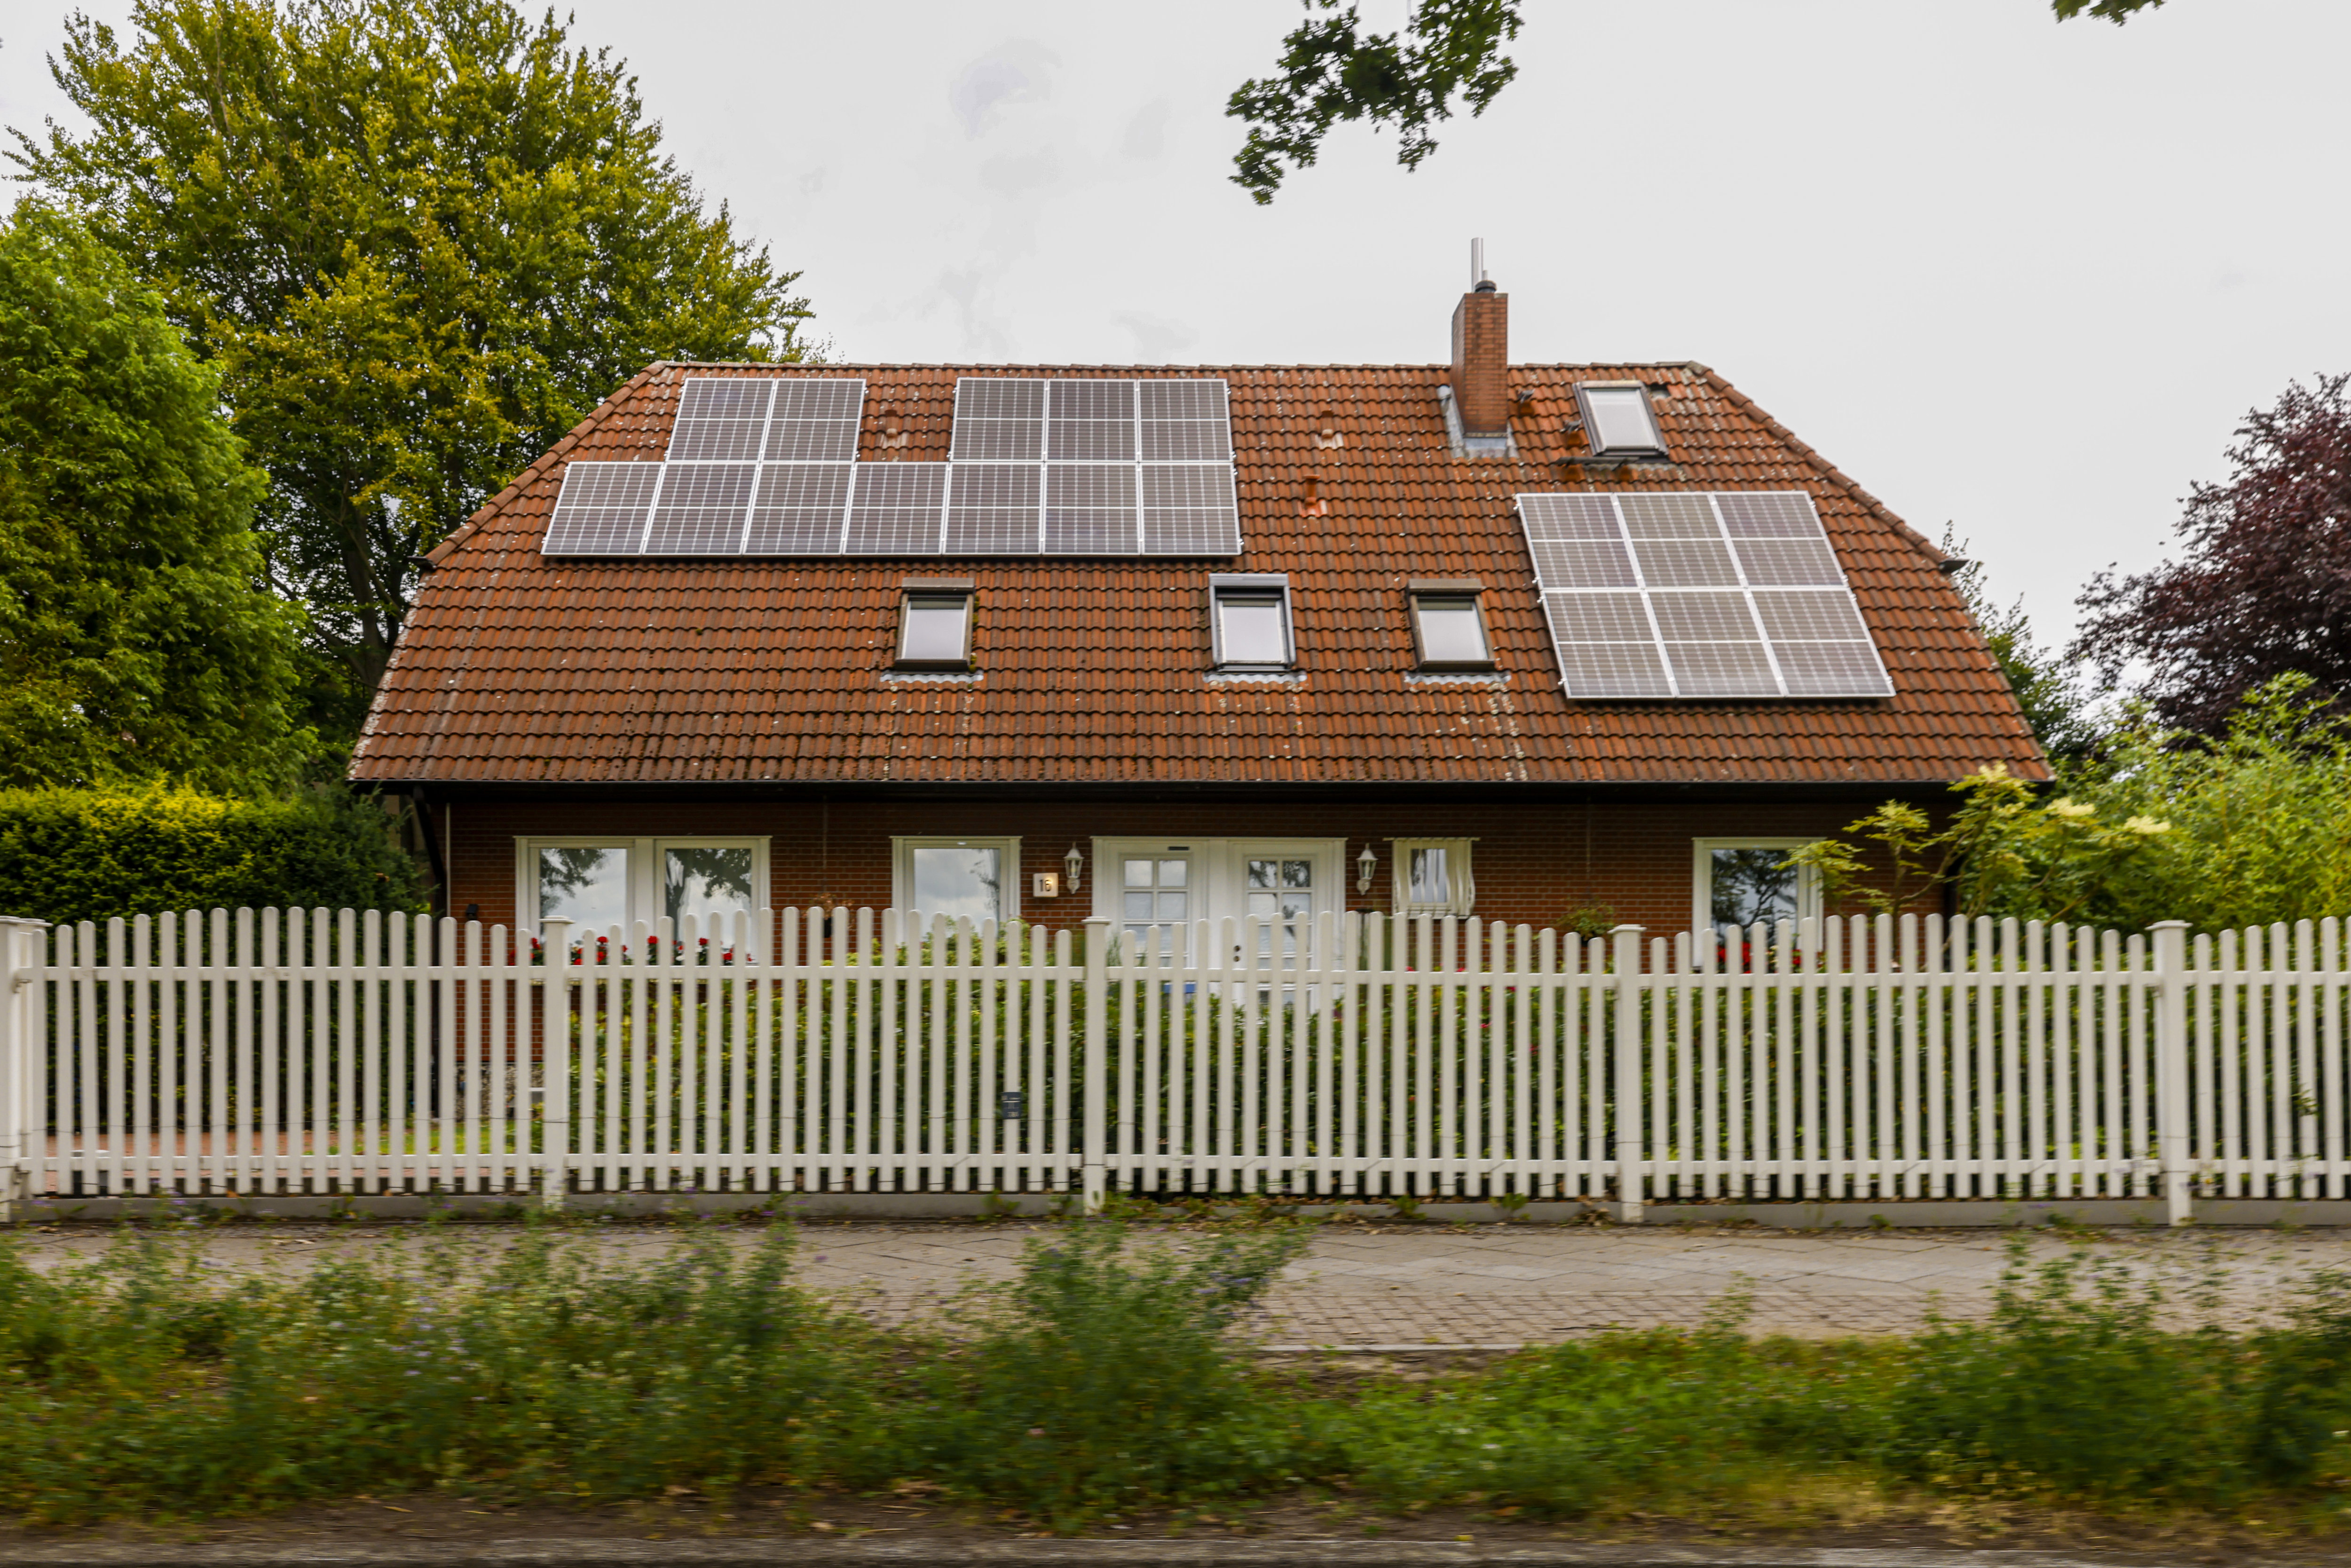 Berlin (Allemagne), mercredi 30 août. Outre-Rhin, l'achat de panneaux solaires se fait même en leasing. LP/Olivier Corsan